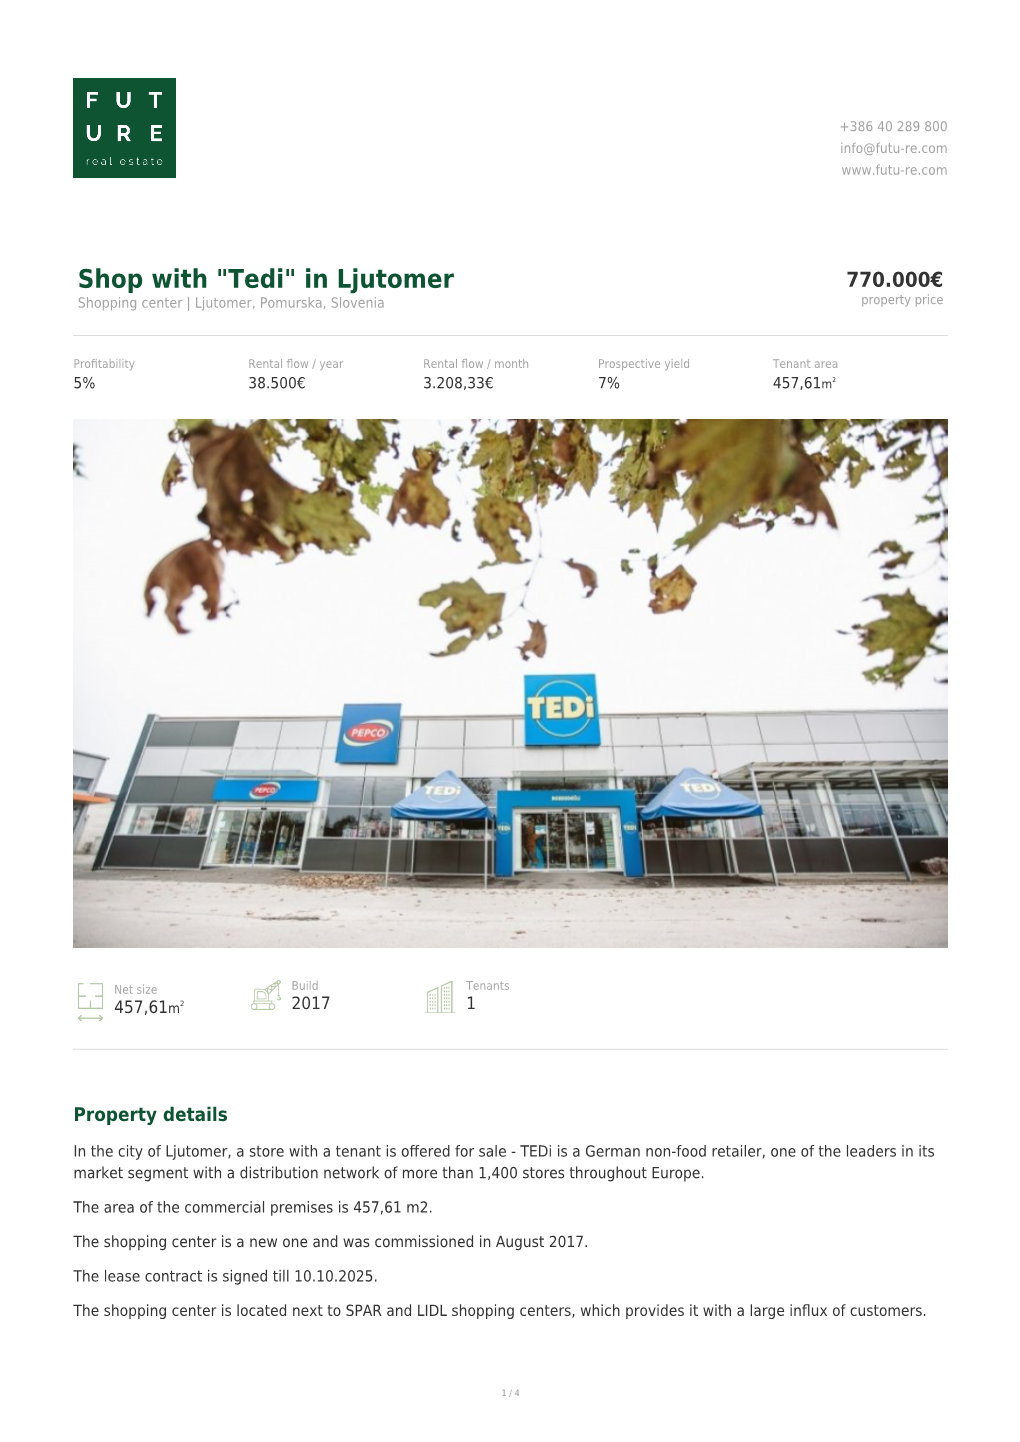 "Tedi" in Ljutomer 770.000€ Shopping Center | Ljutomer, Pomurska, Slovenia Property Price